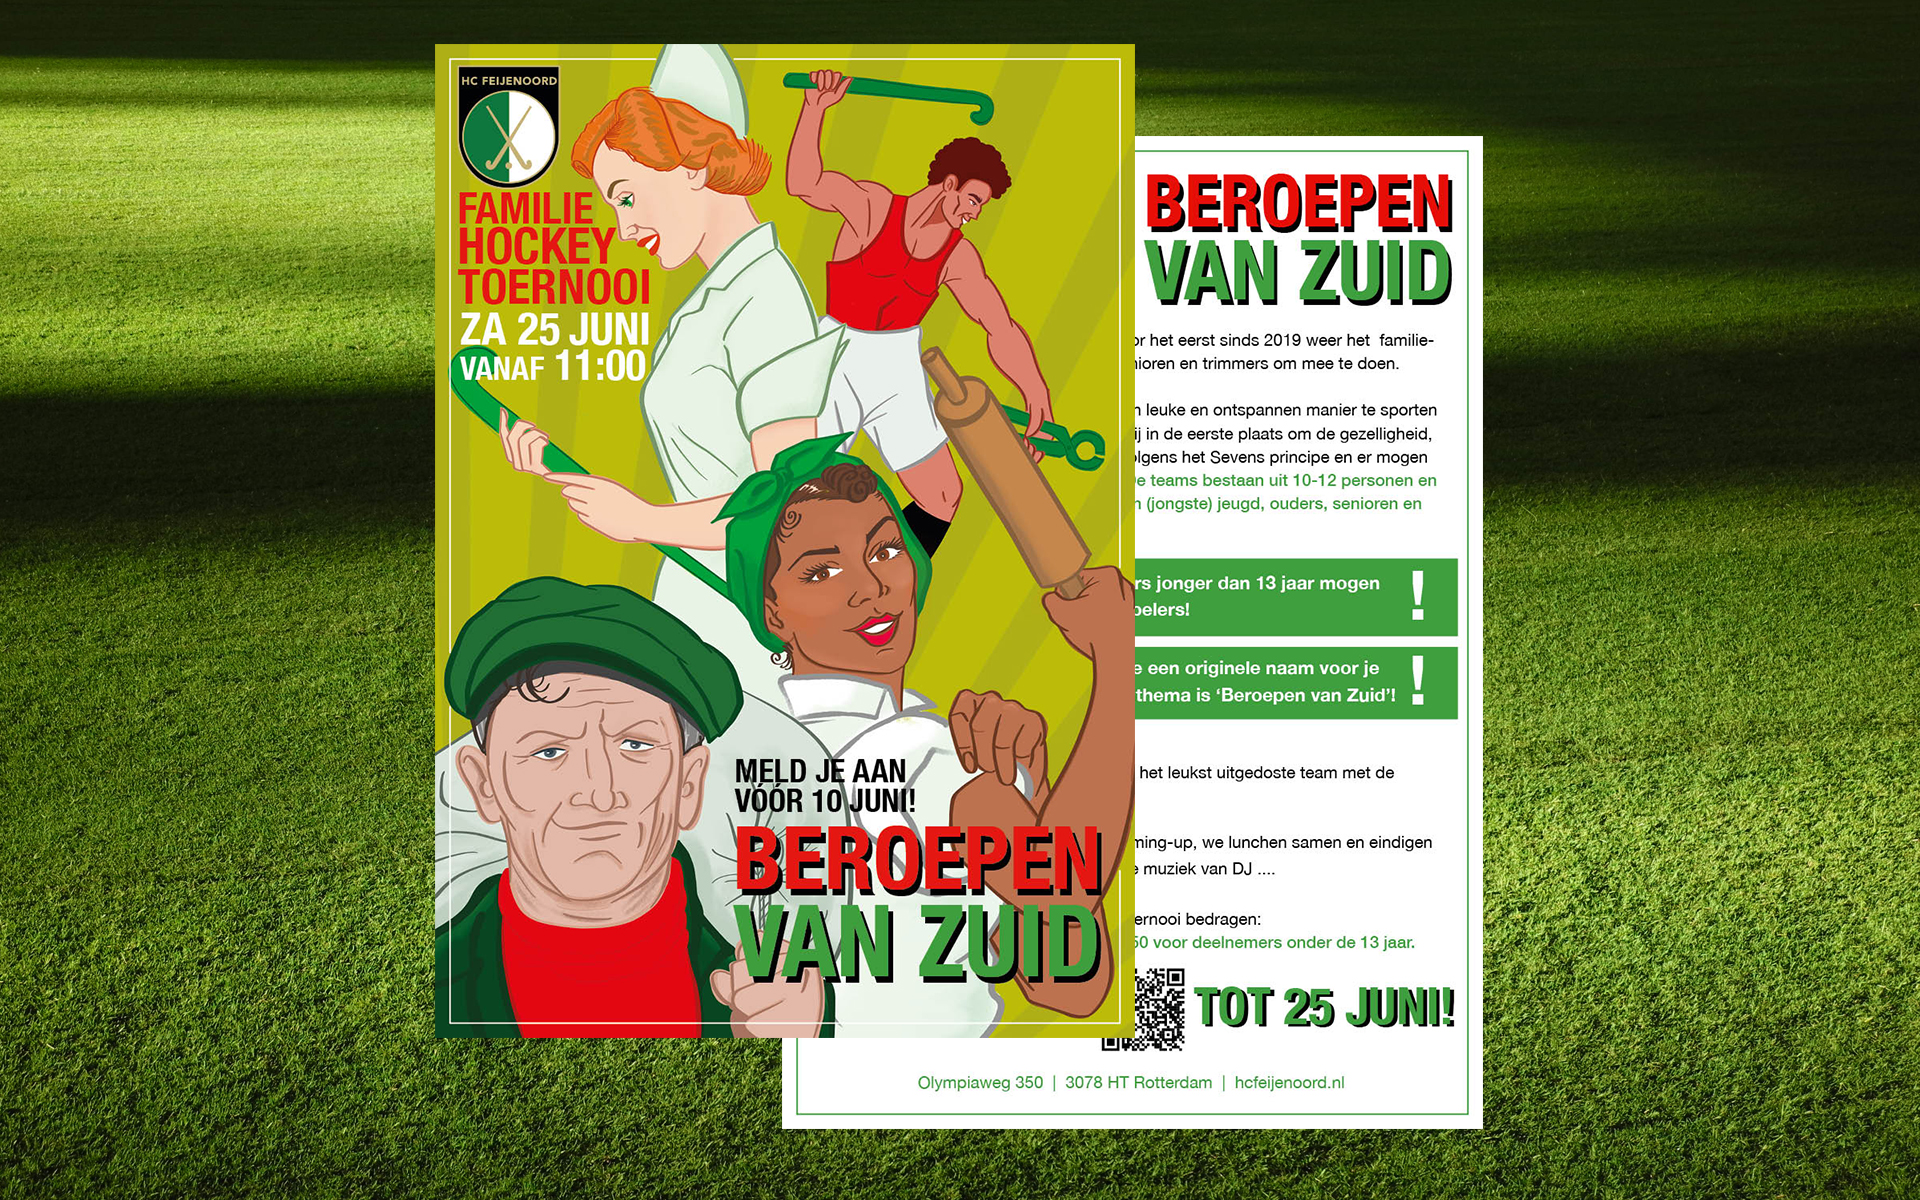 https://www.bergjemaar.nl/wp-content/uploads/2020/06/Bergjemaar_Portfolio_BeroepenvanZuid01.jpg